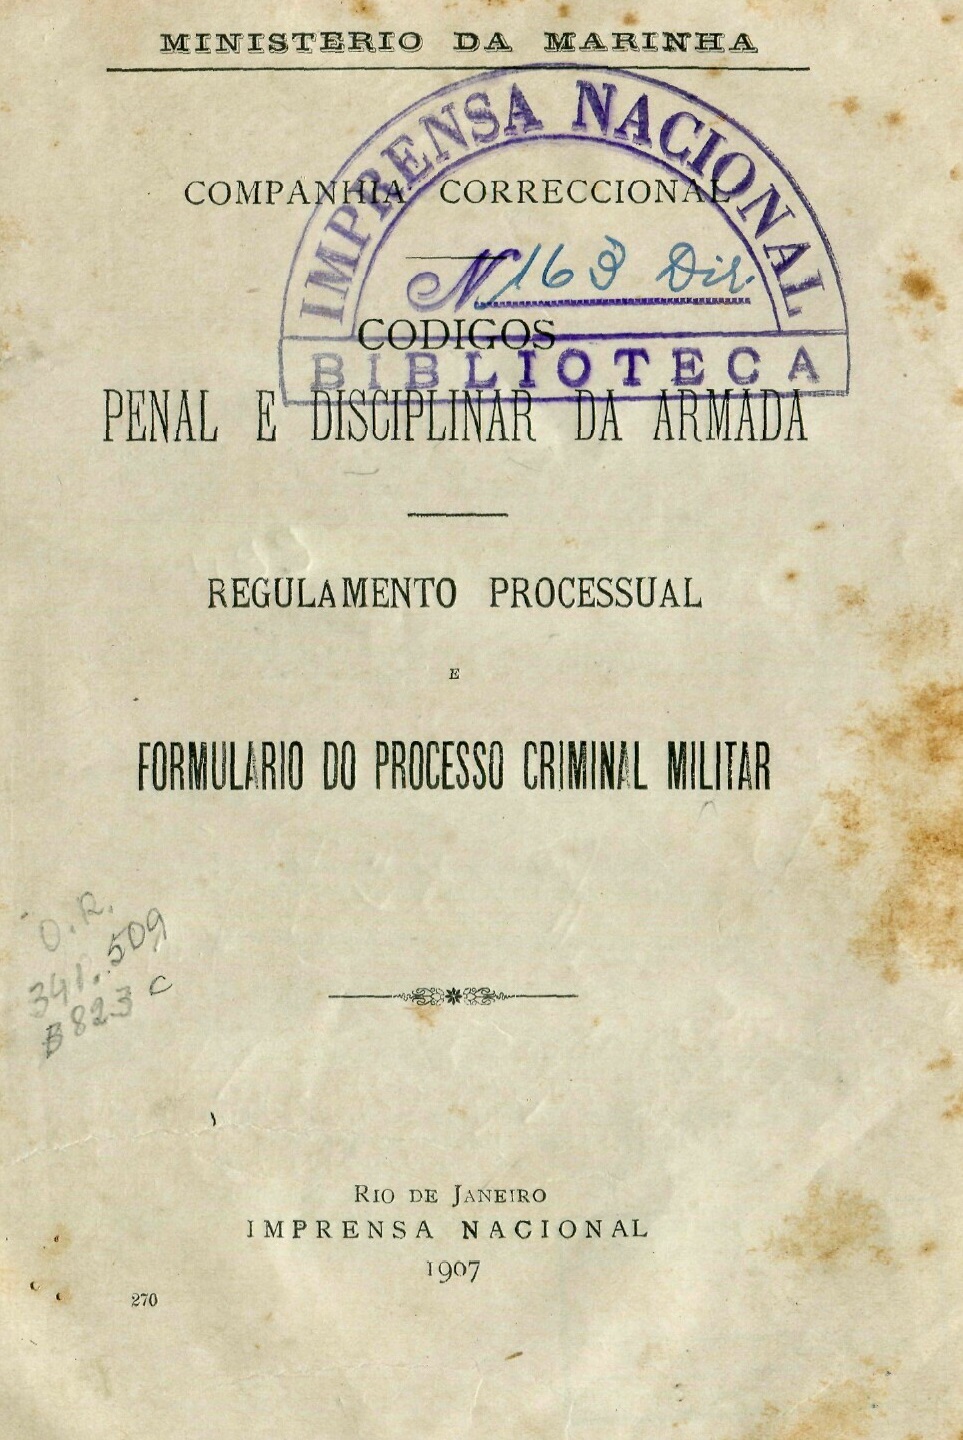 Capa do Livro Codigos Penal e Disciplinar da Armada